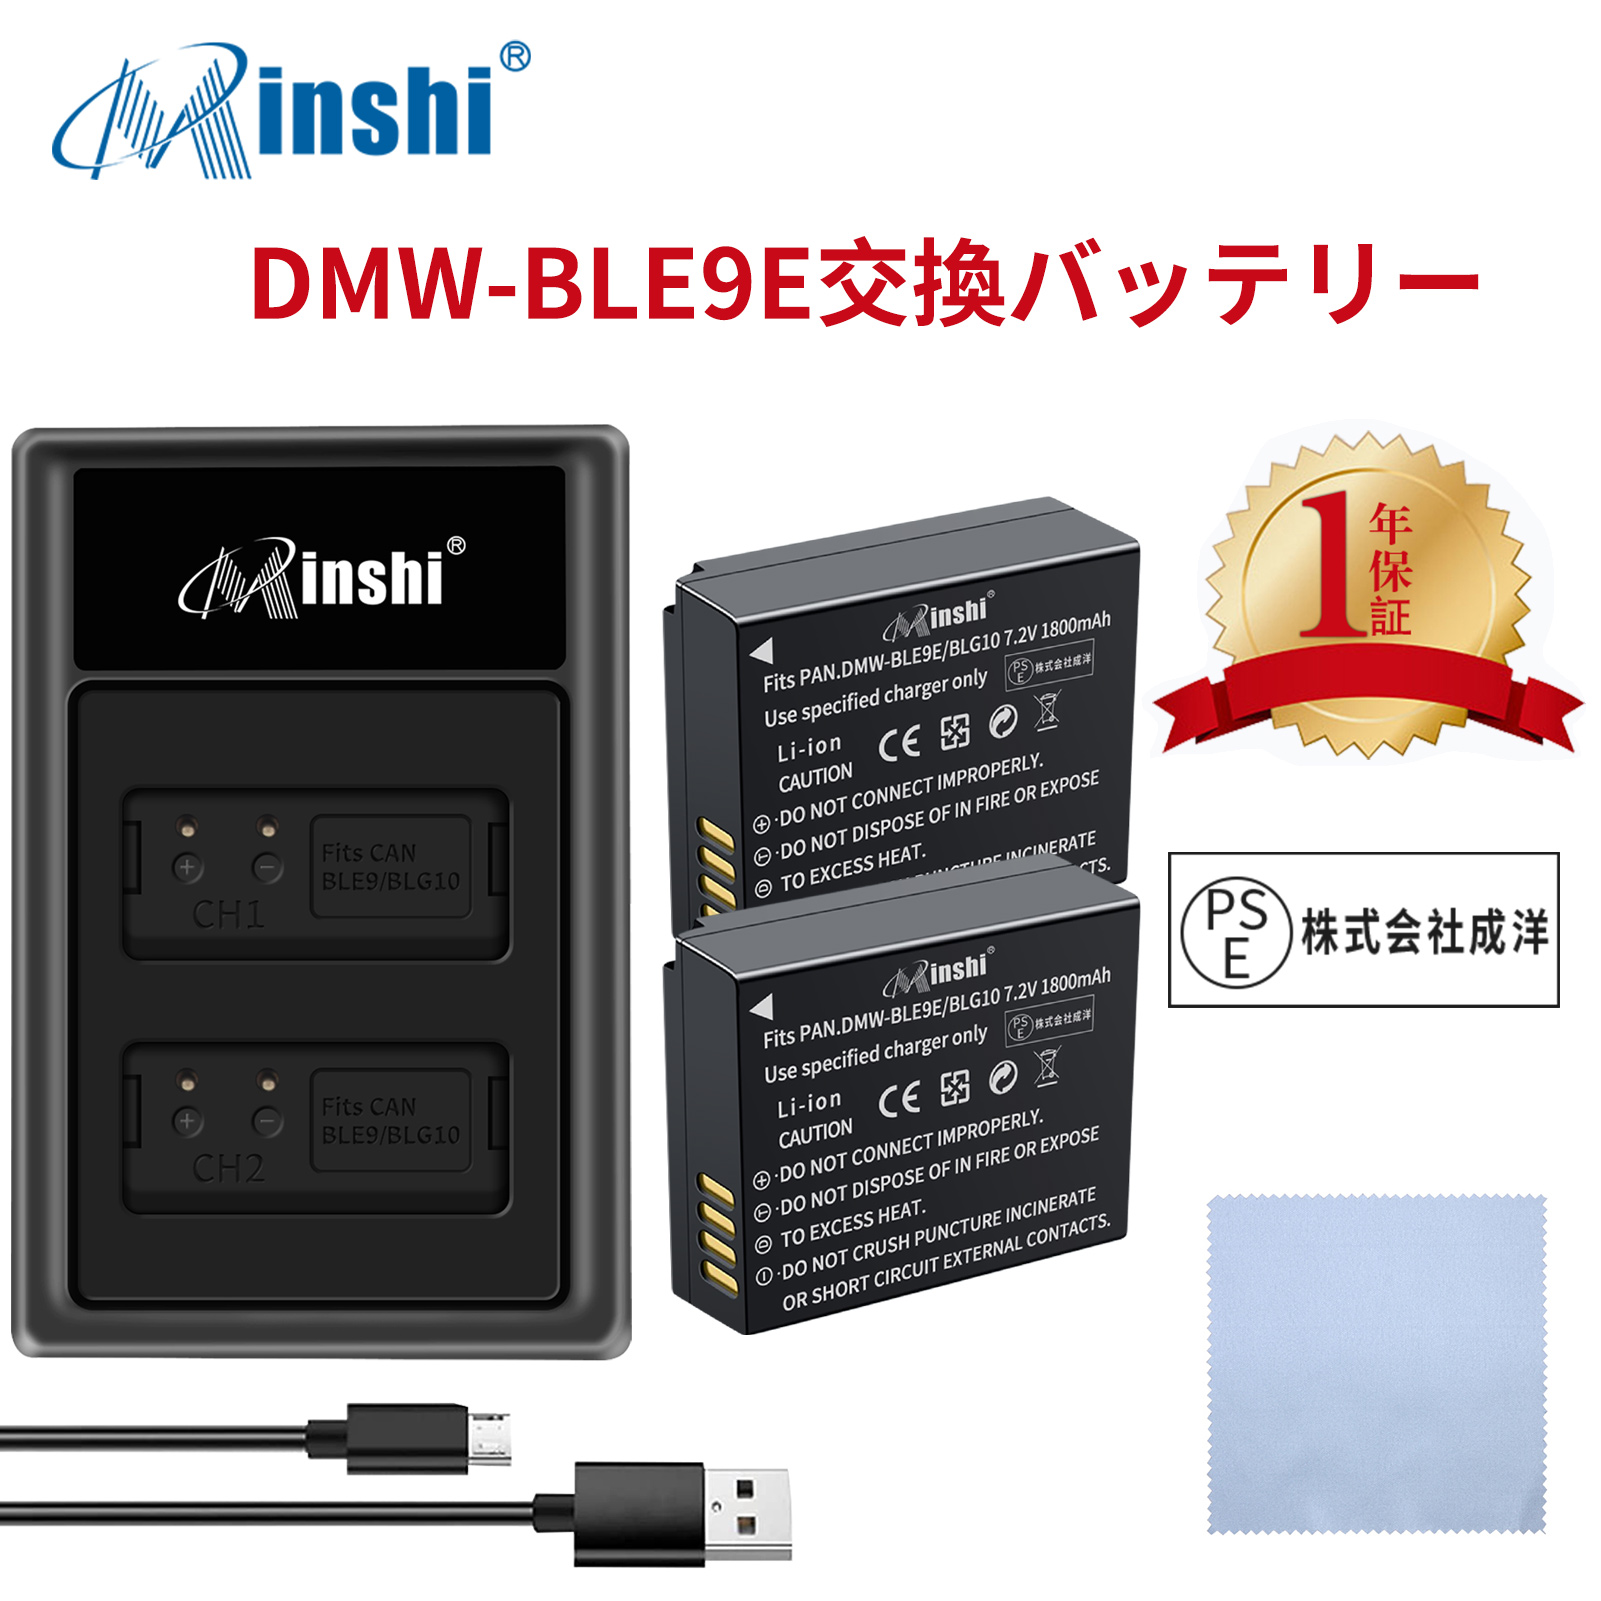 【セット】minshi Panasonic DMC-GF6 DMW-BLE9   【1800mAh 7.2V】PSE認定済 高品質 DMW-BLG10 交換用バッテリー【2個】